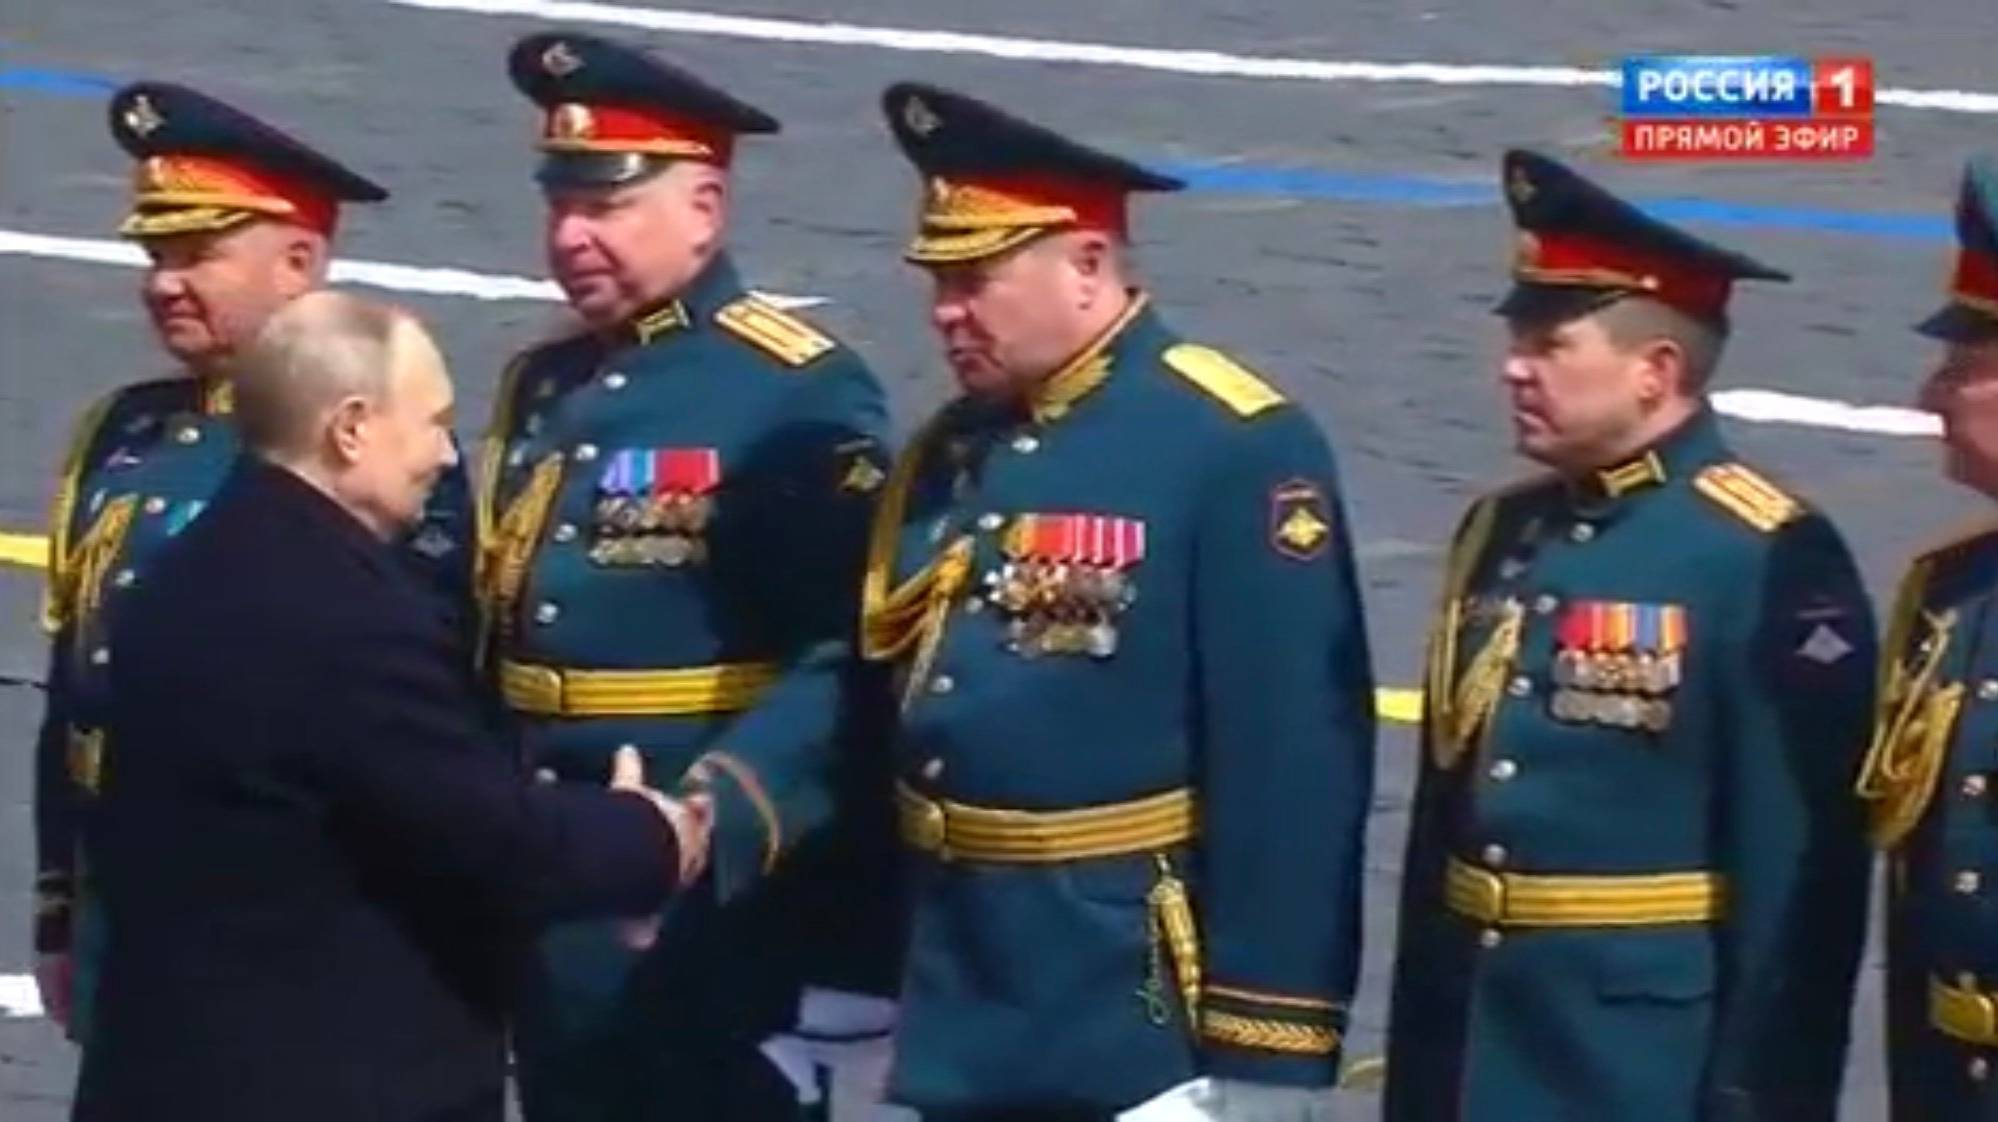 Putin i wojskowi w mundurach